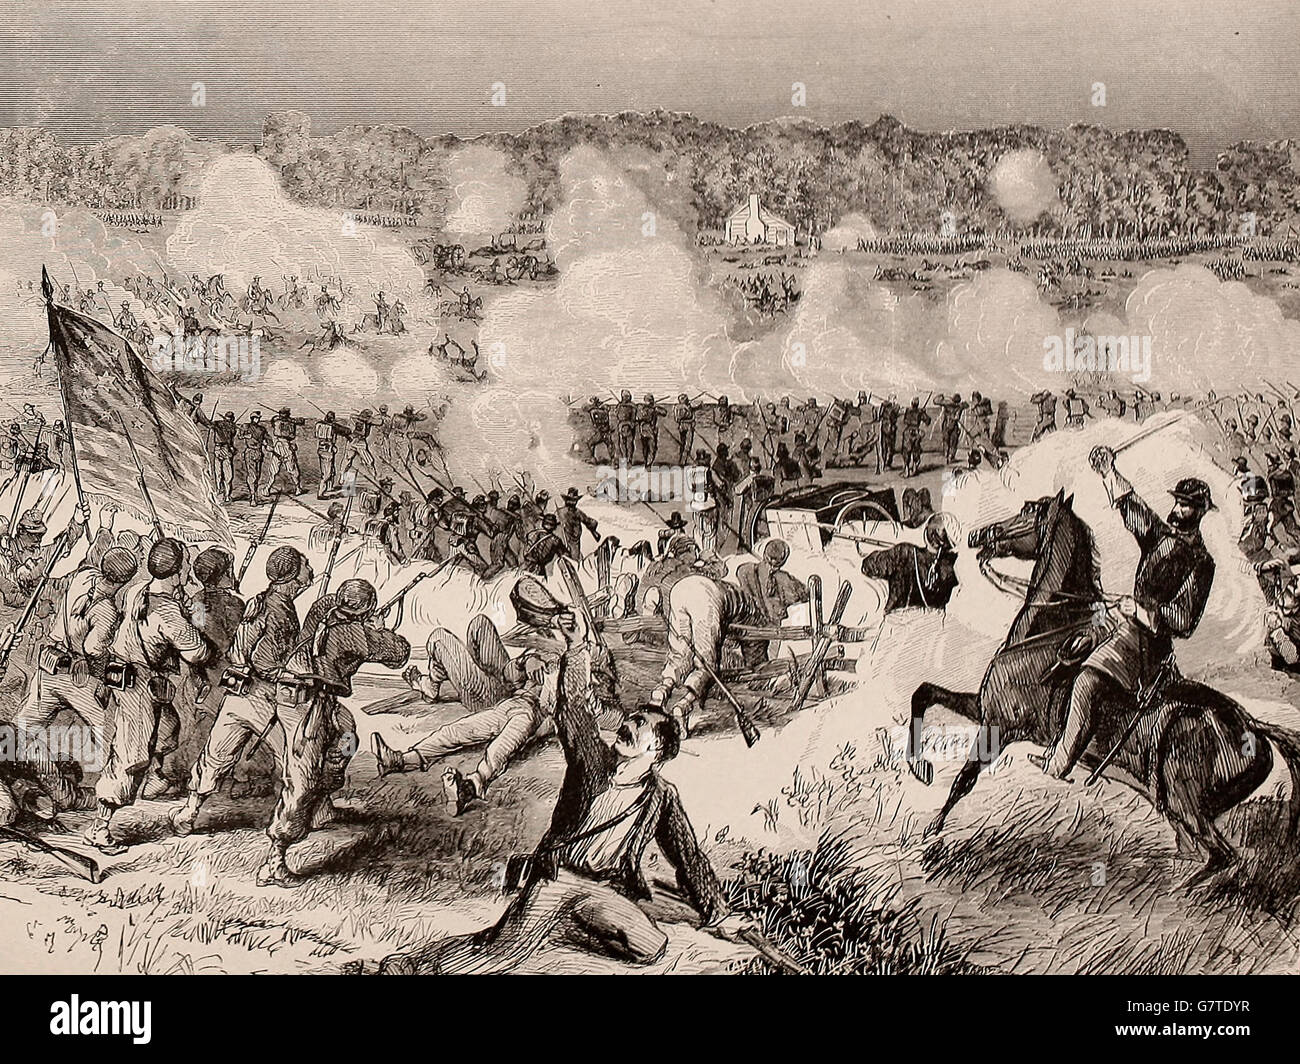 Bataille de Winchester, Virginia - Accusation de Crook's Huitième Corp, le droit, le 21 mars 1862. Guerre civile USA Banque D'Images